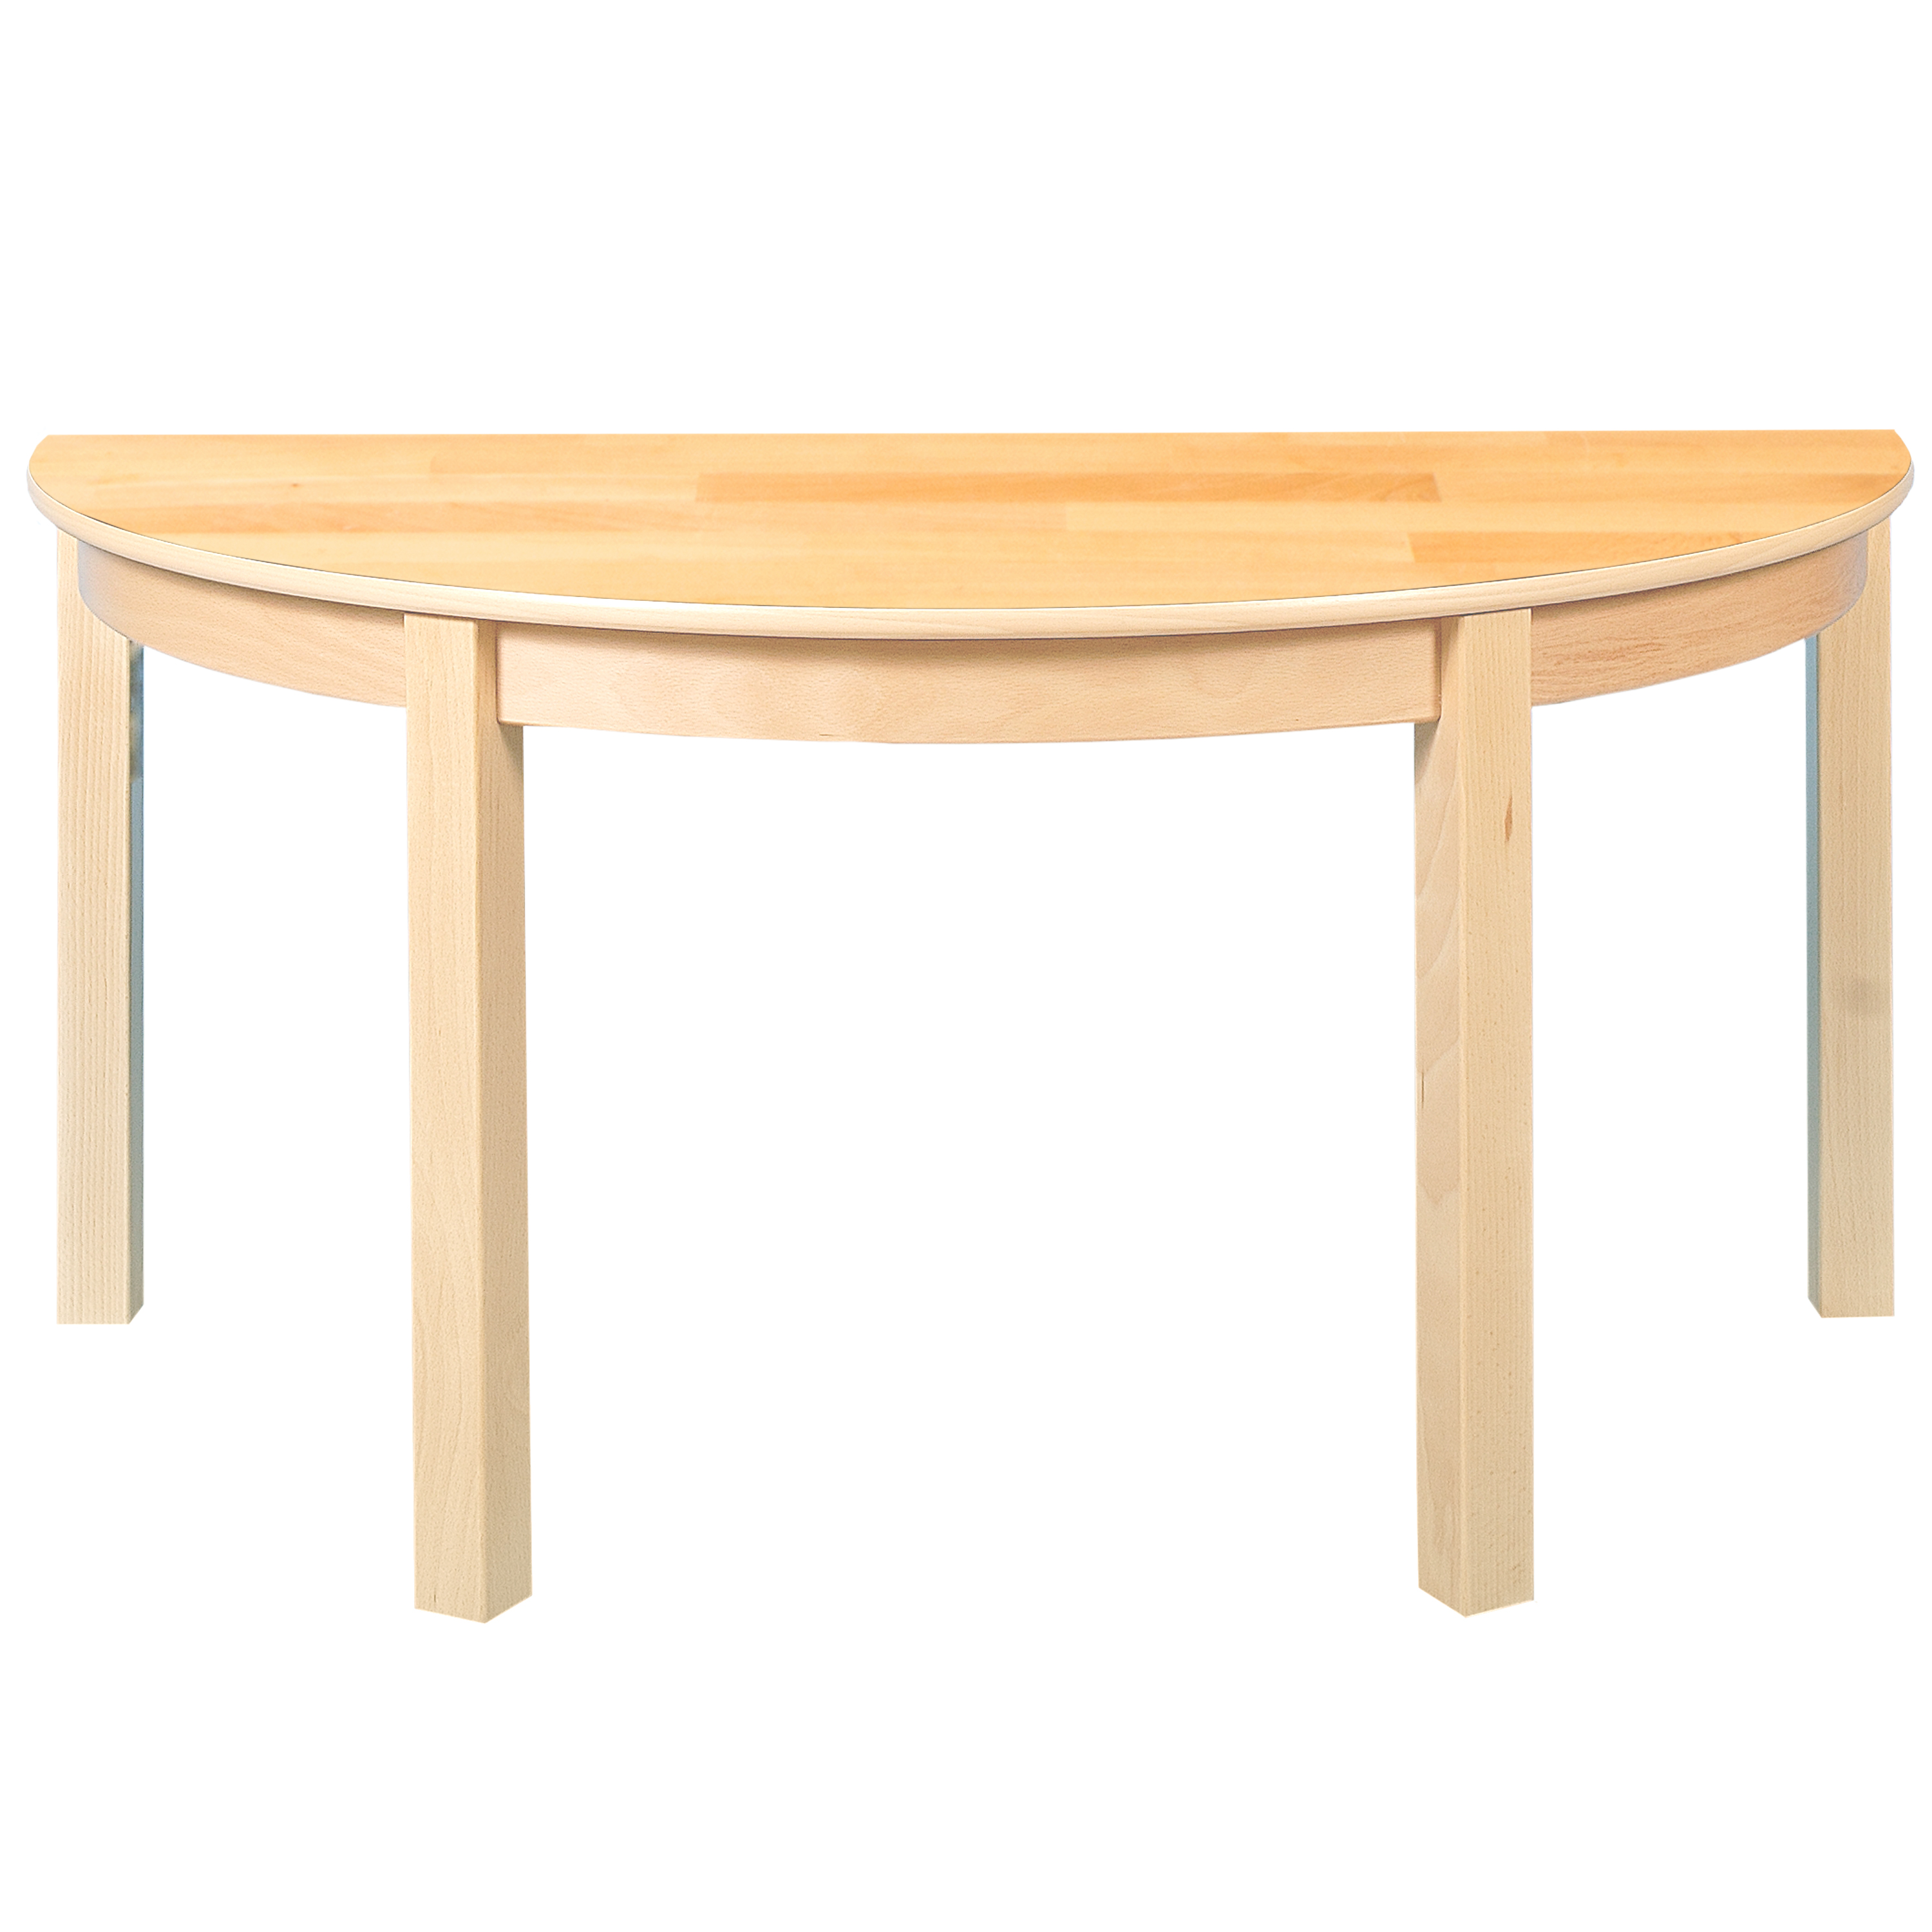 Halbkreis-Tisch, Durchmesser 120 cm, Tischhöhe 46 cm